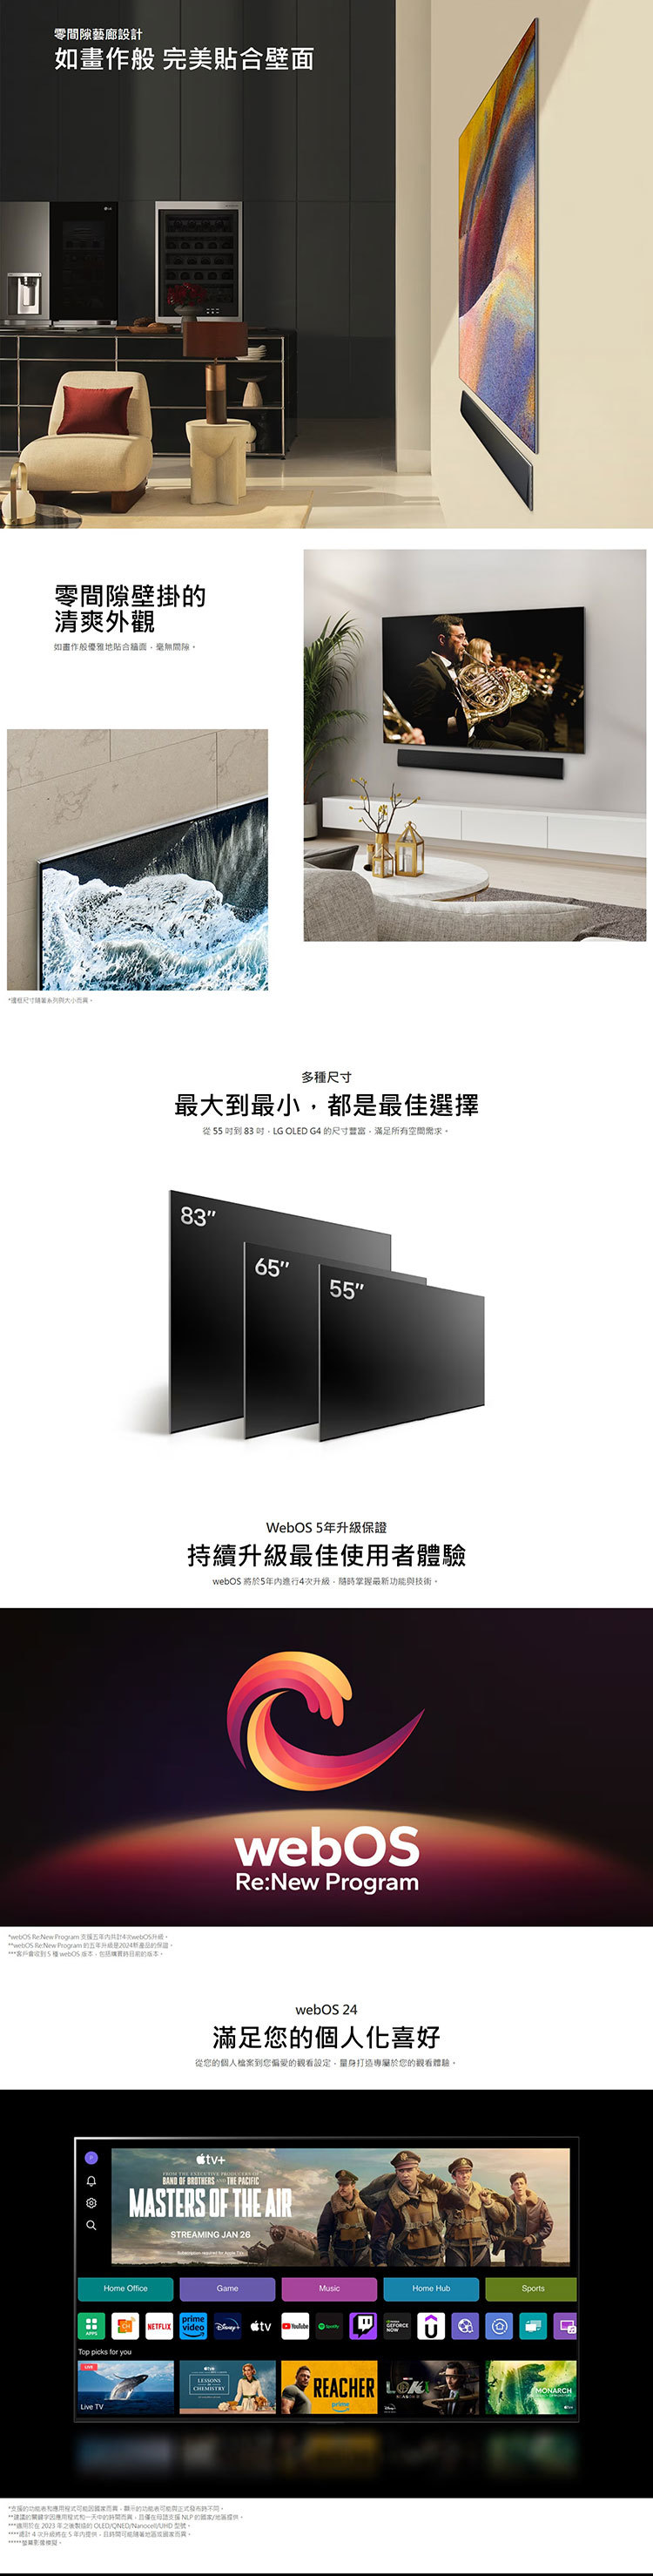 LG OLED83G4PTA 83吋 OLED evo 4K AI 語音物聯網 G4 零間隙藝廊系